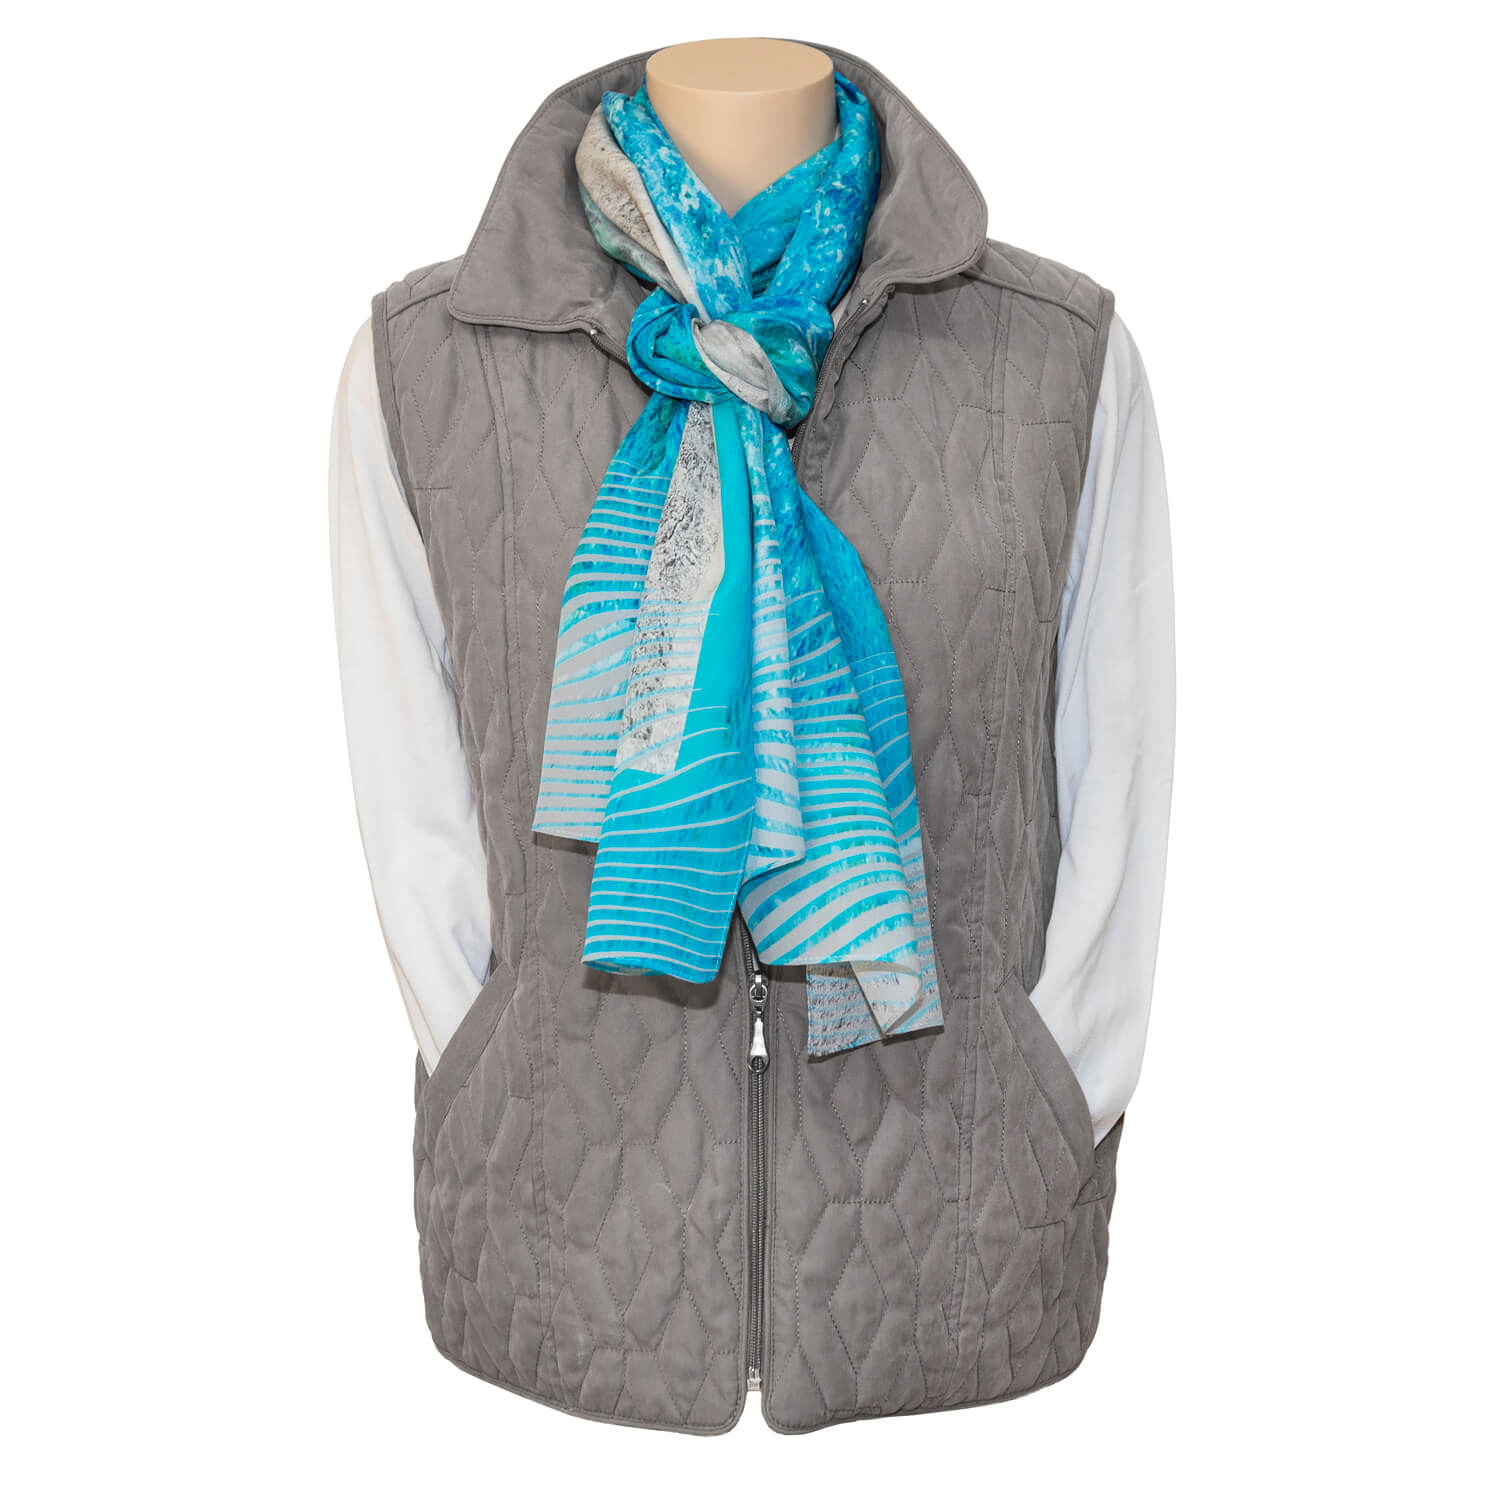 sand n sea blue silk scarf with grey vest